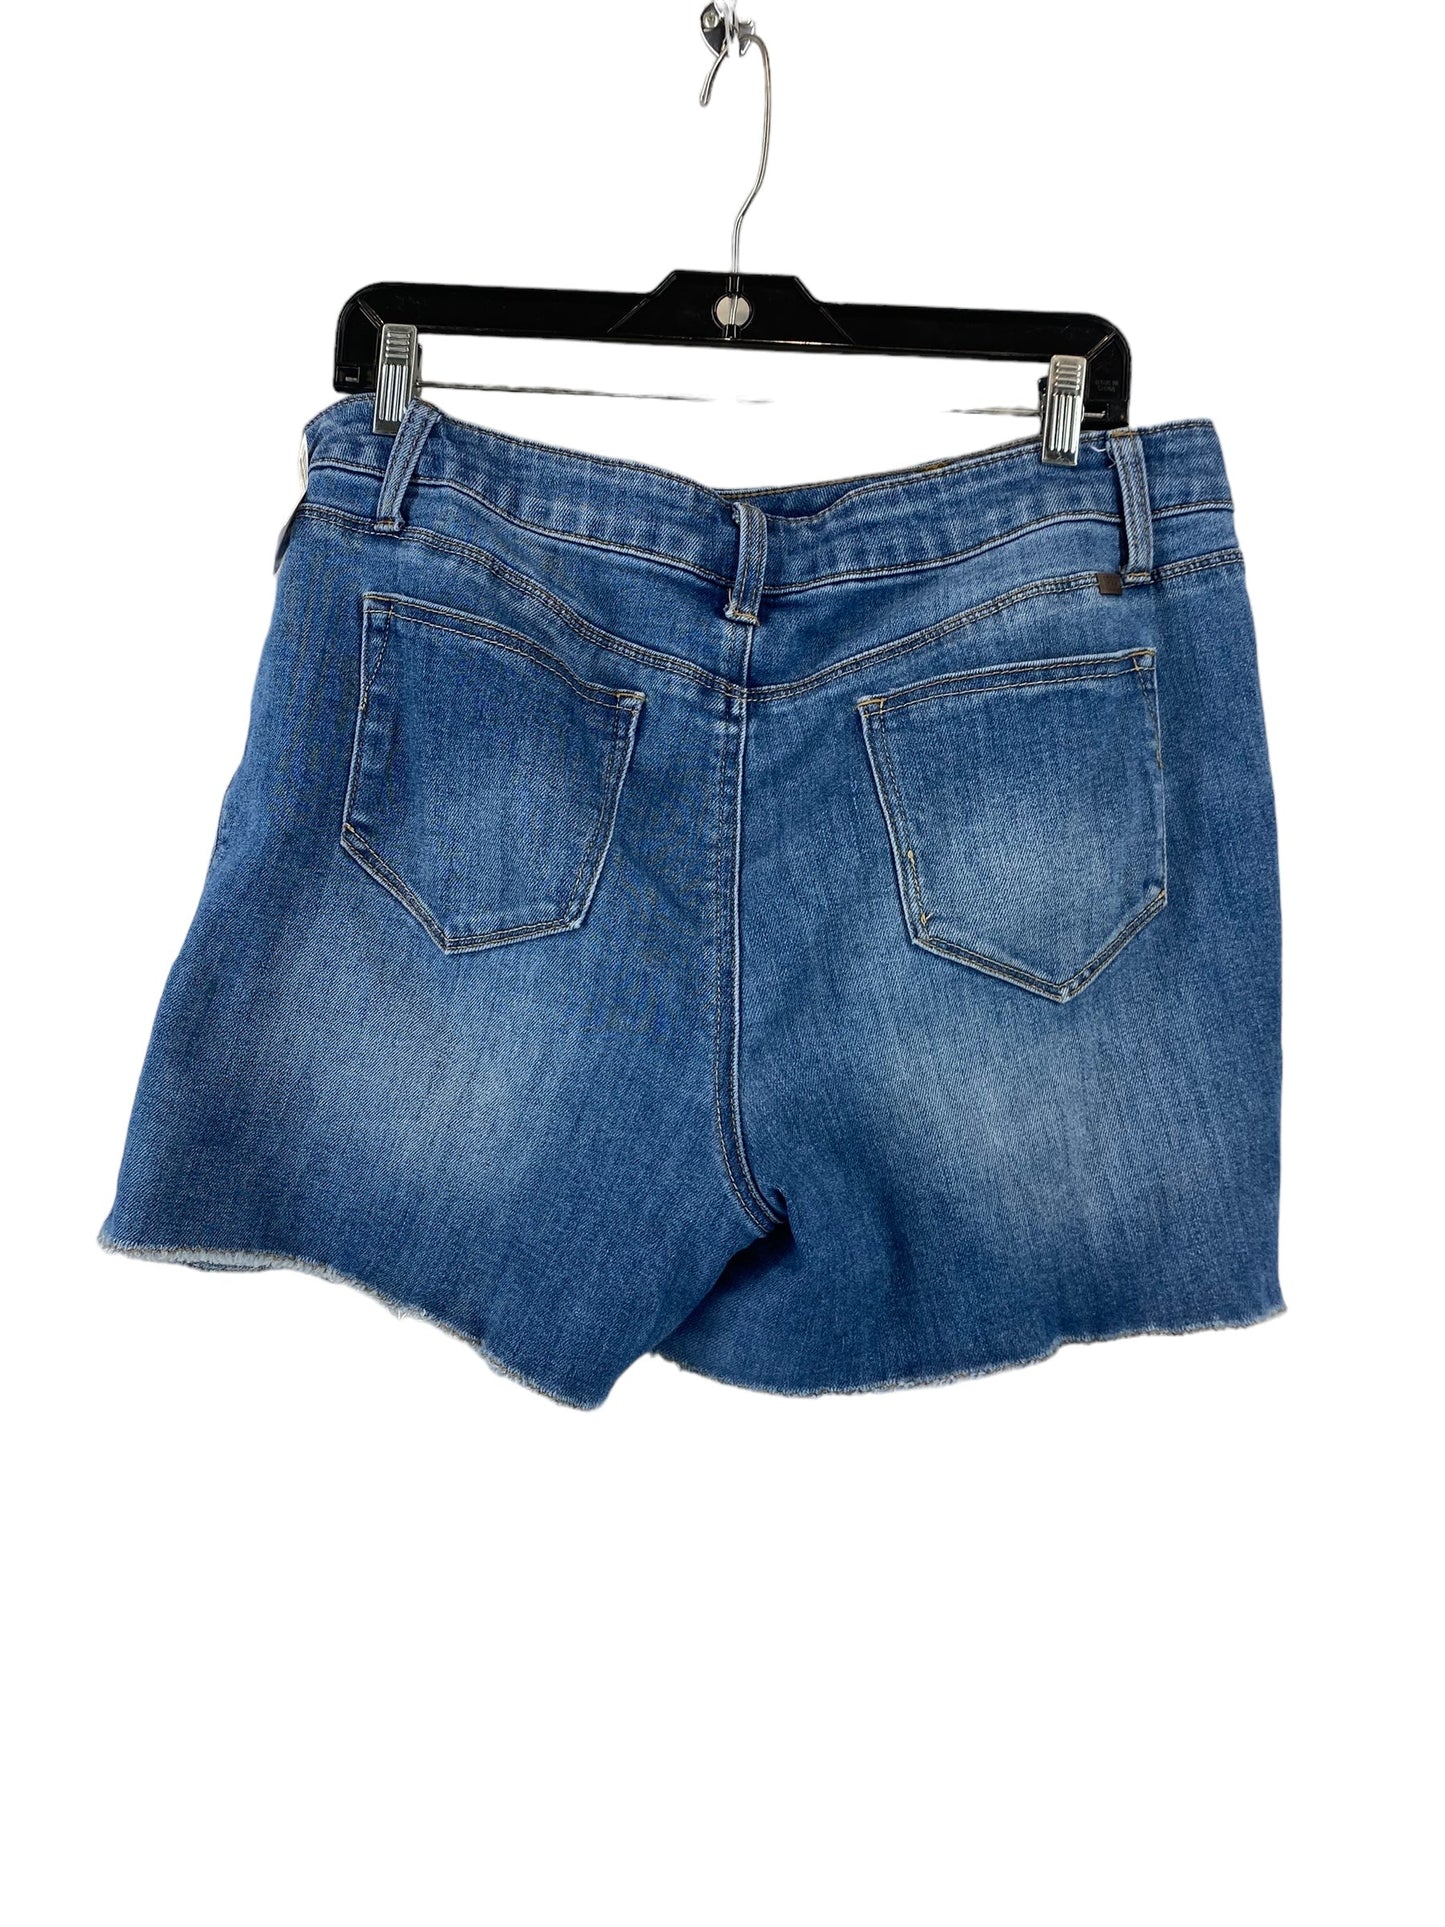 Blue Denim Shorts 1822 Denim, Size 12